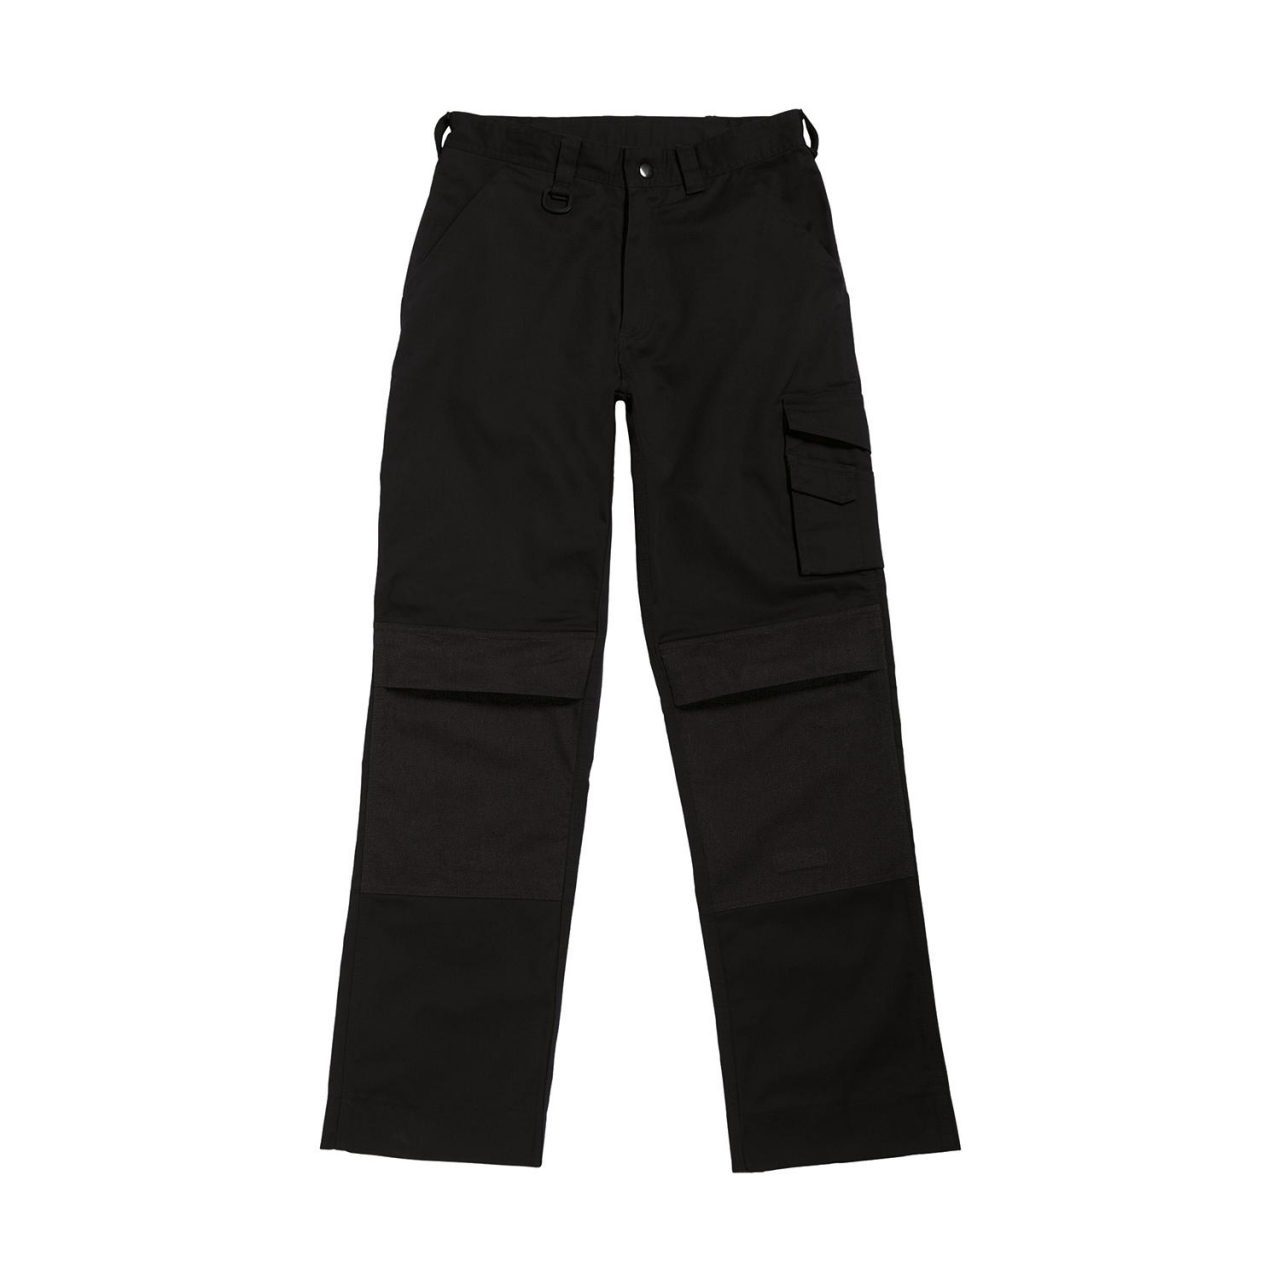 Kalhoty pracovní B&C Universal Pro - černé, 44